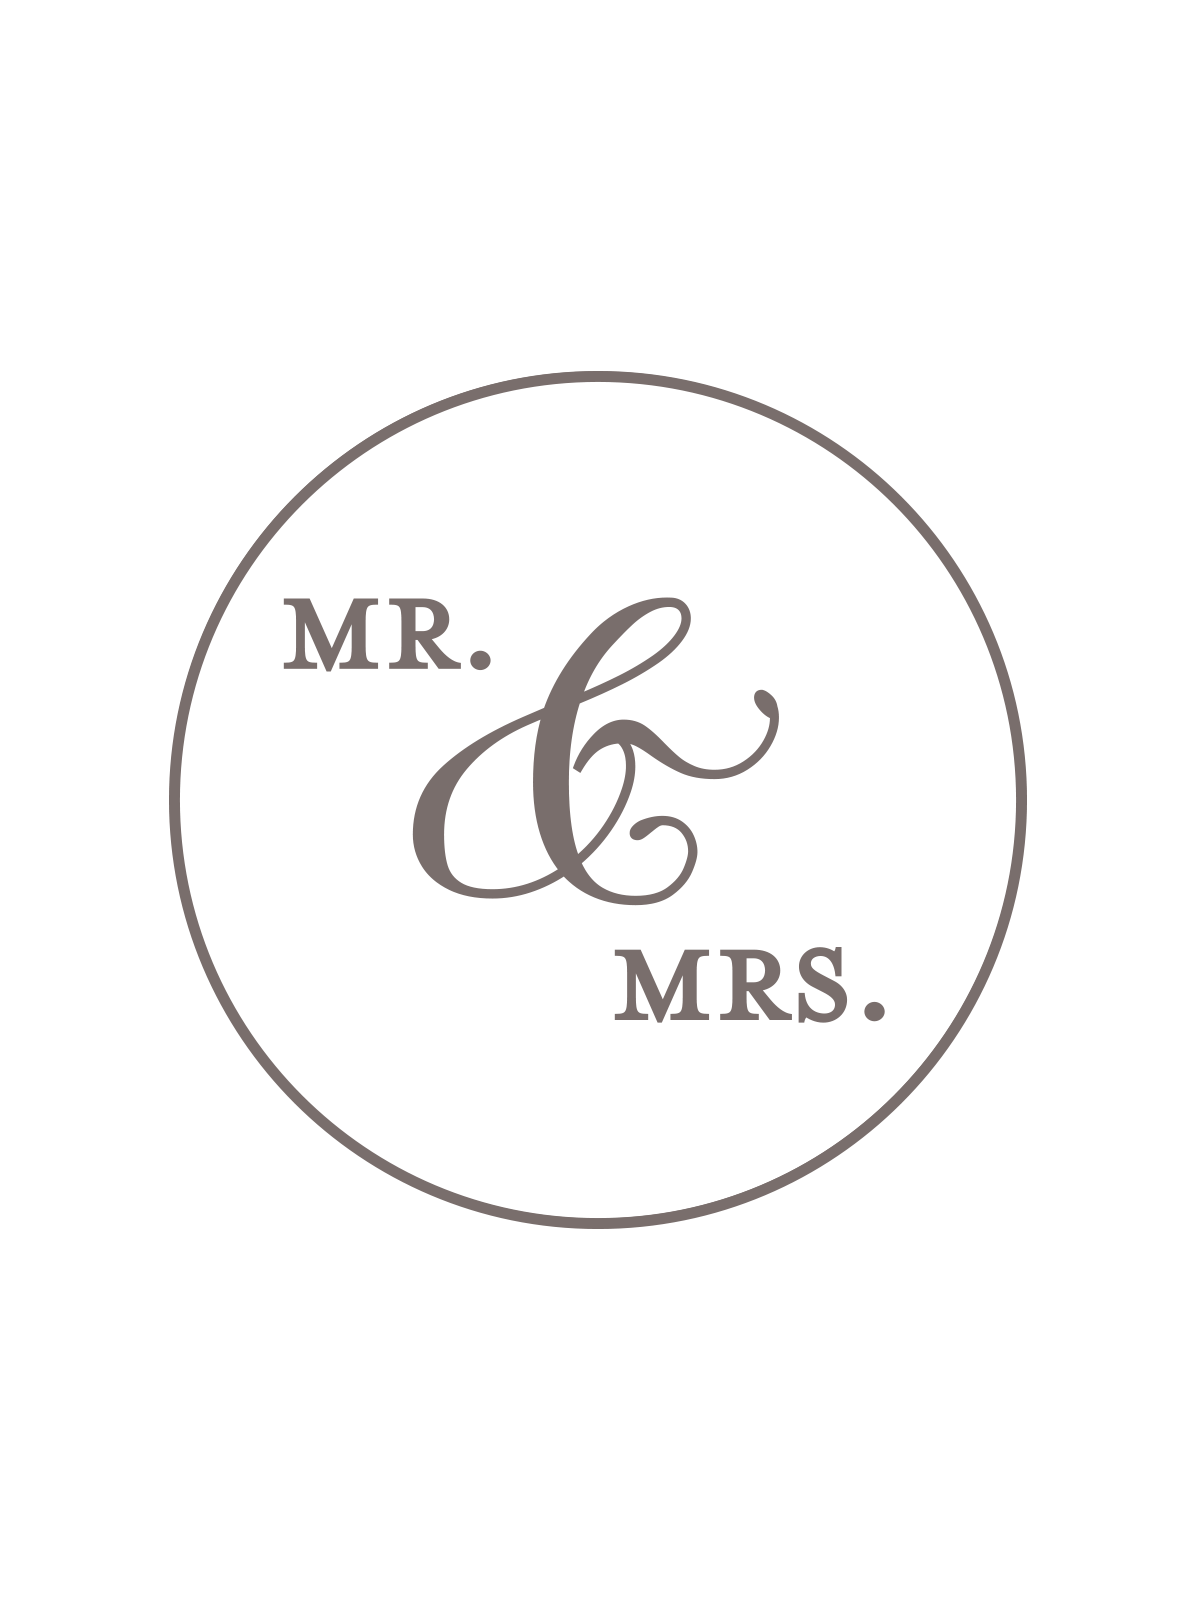 Mr. & Mrs. - Wax Seals